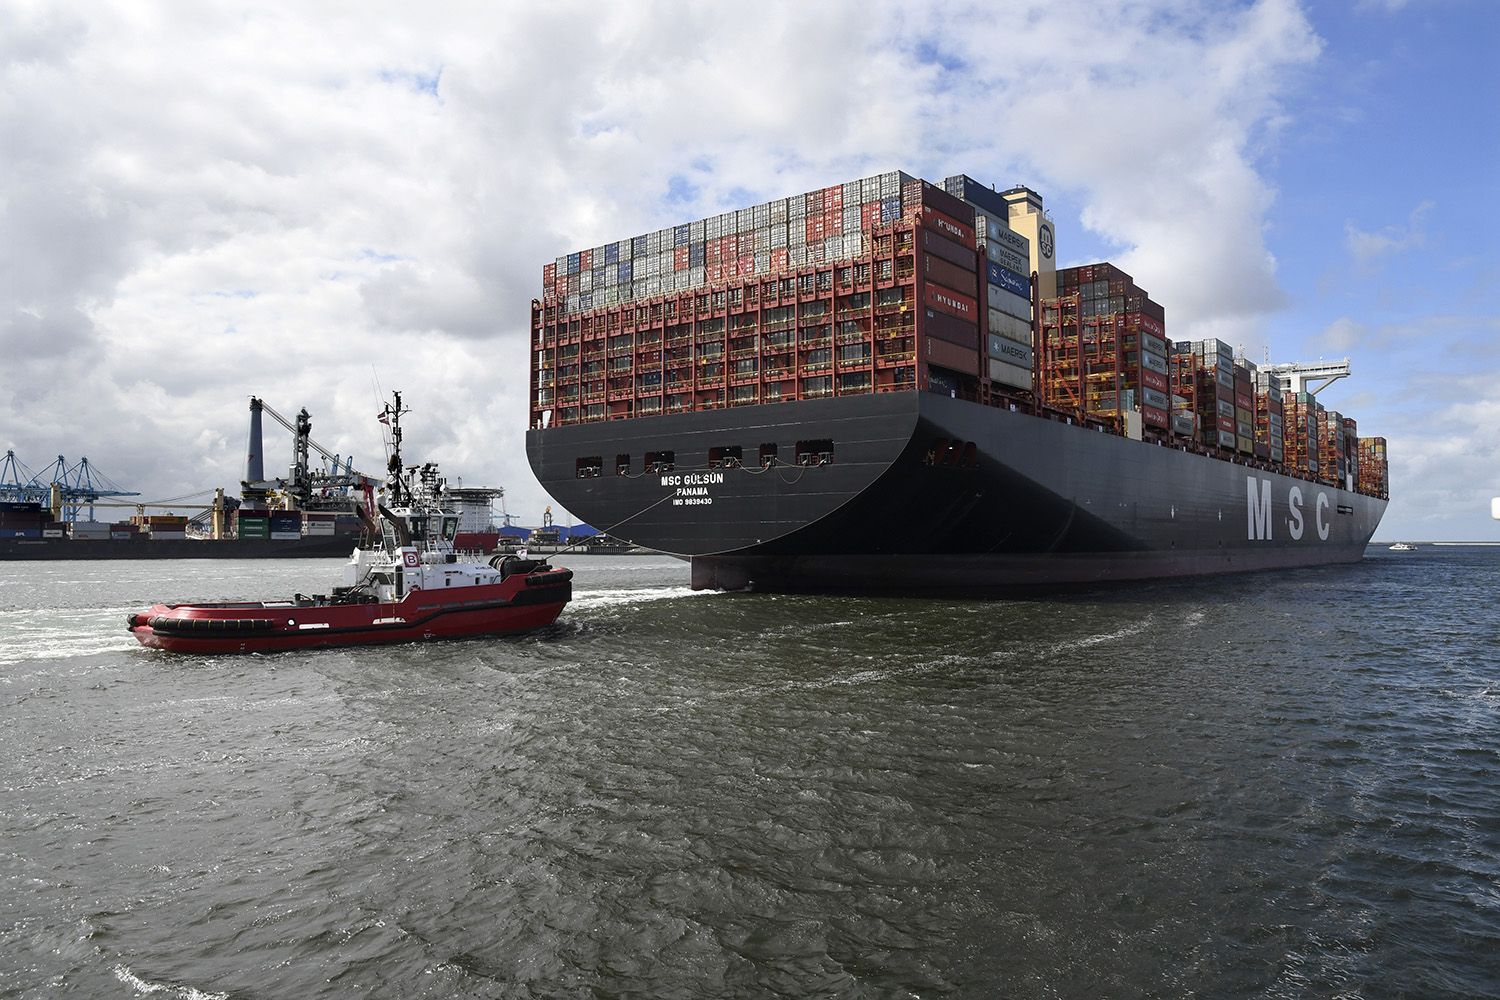 Порт Роттердам принял крупнейший в мире контейнеровоз